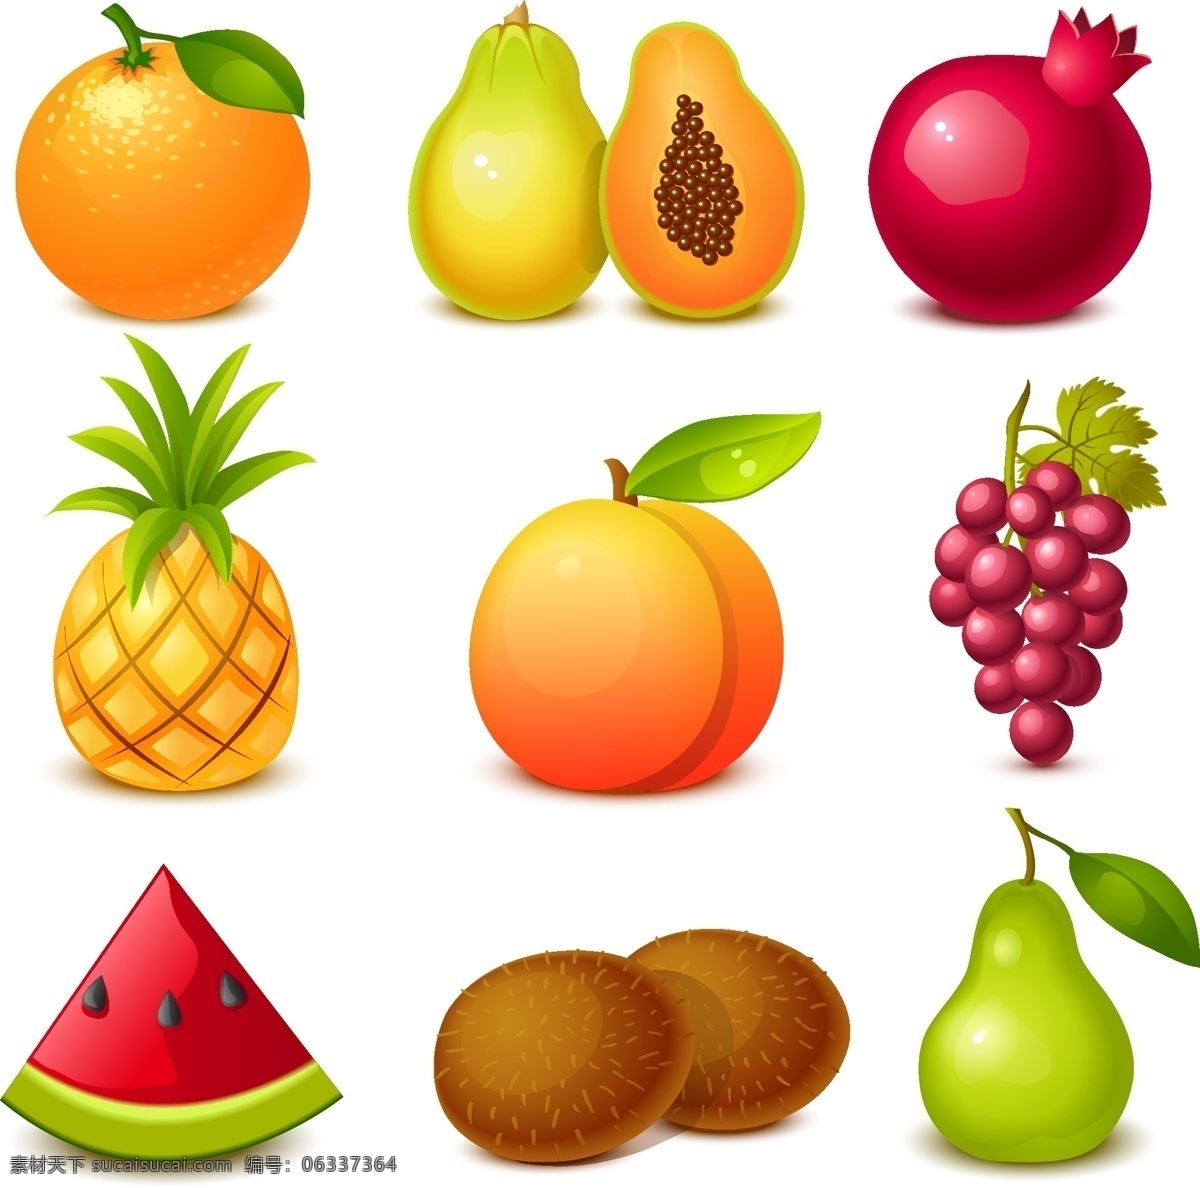 2015 美味 水果 图标 矢量图 eps格式 橙子 木瓜 美味水果图标 日常生活